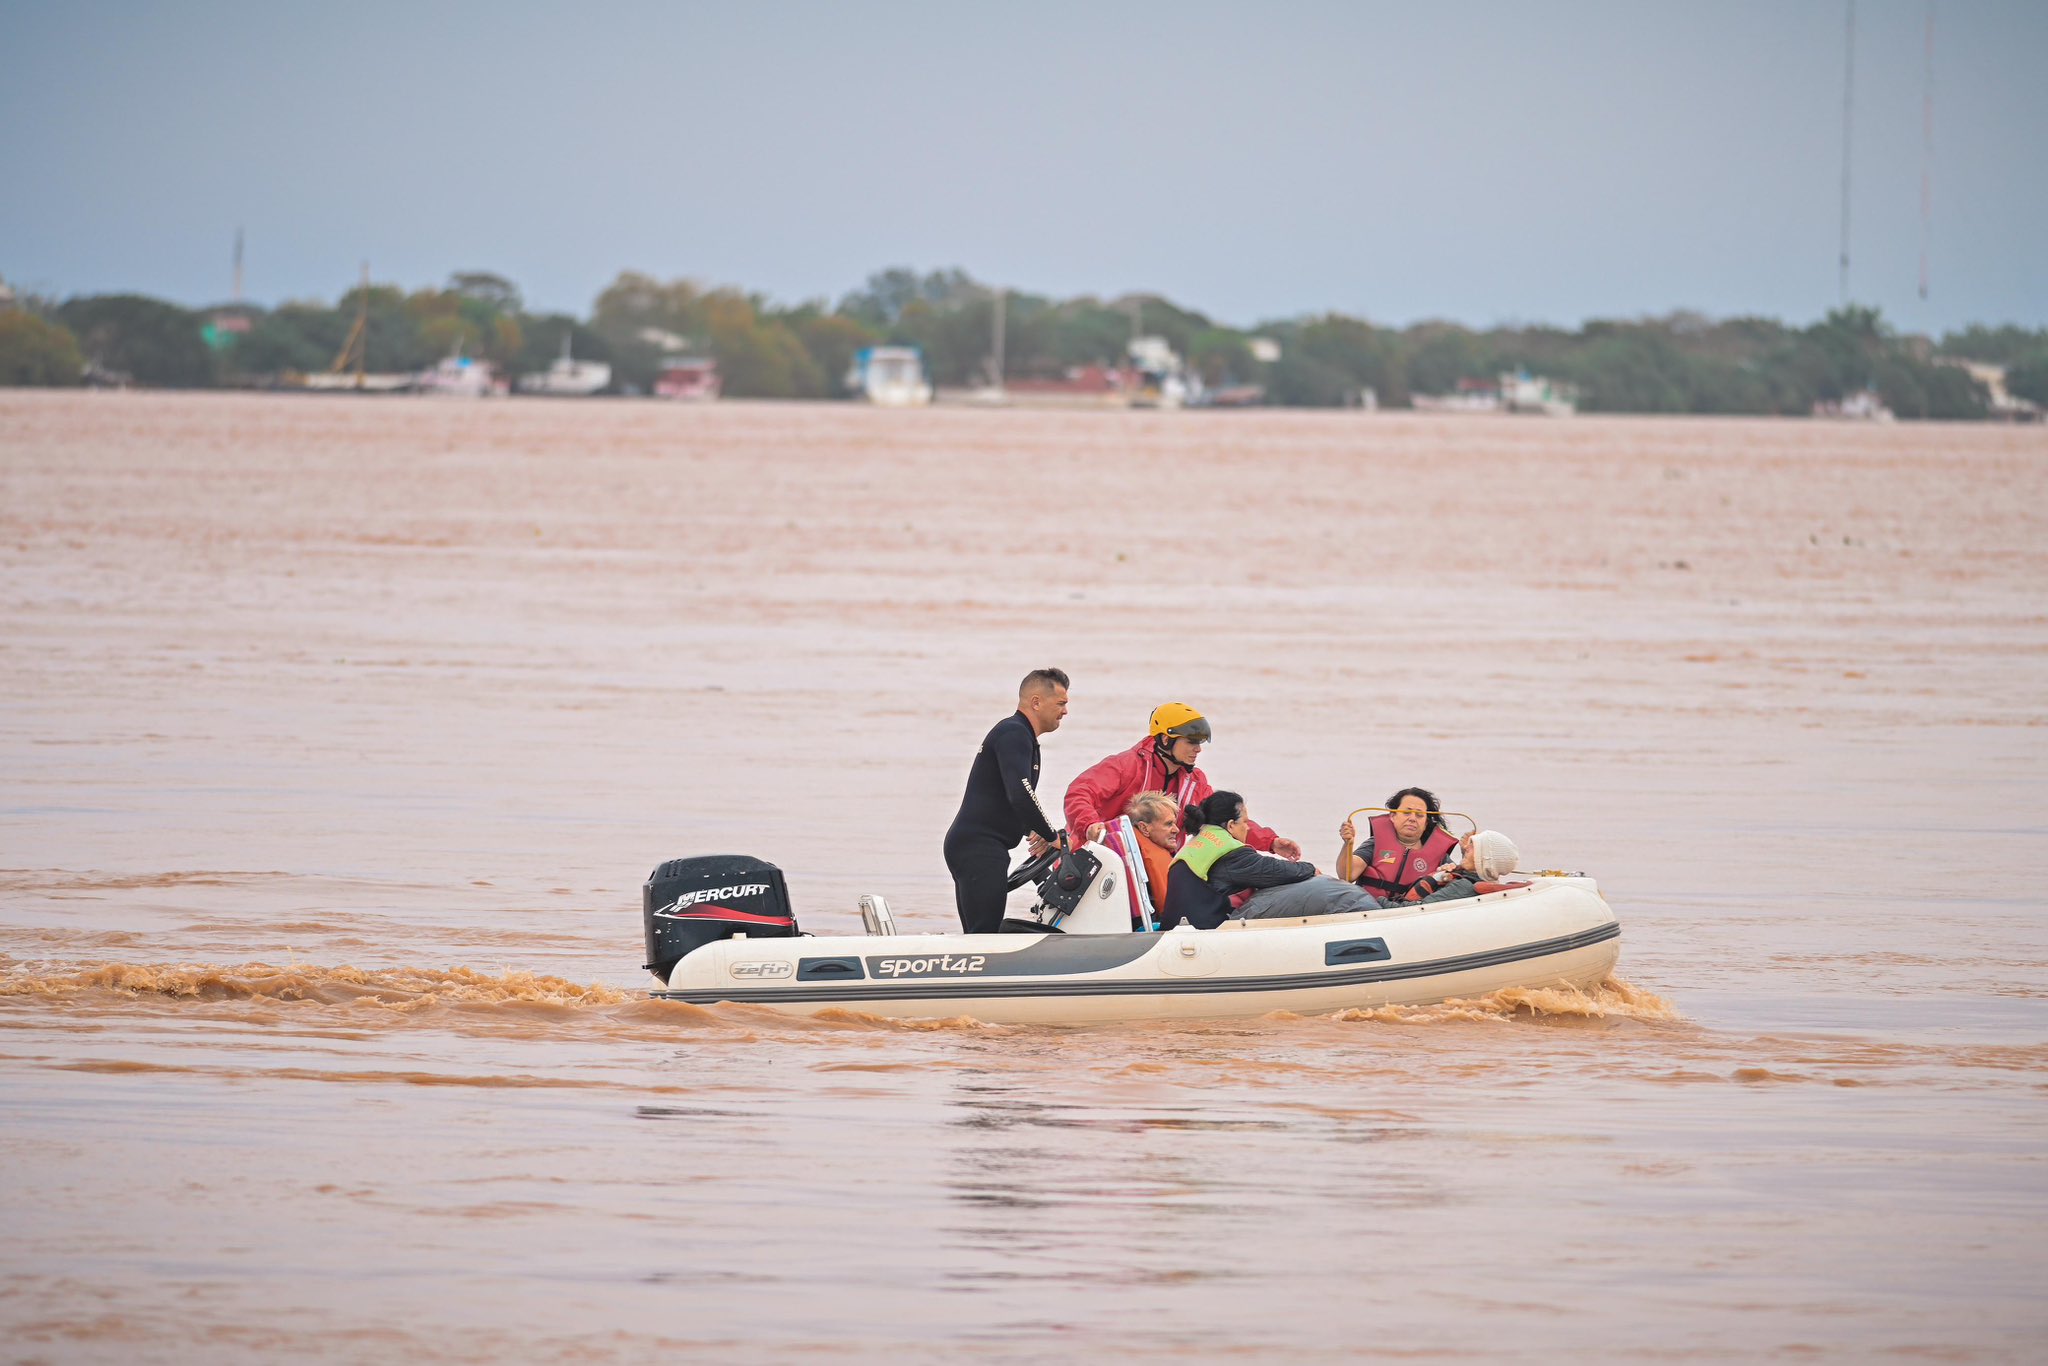 Enchentes no Rio Grande do Sul são ‘desastres pelas mudanças climáticas’, diz Le Monde